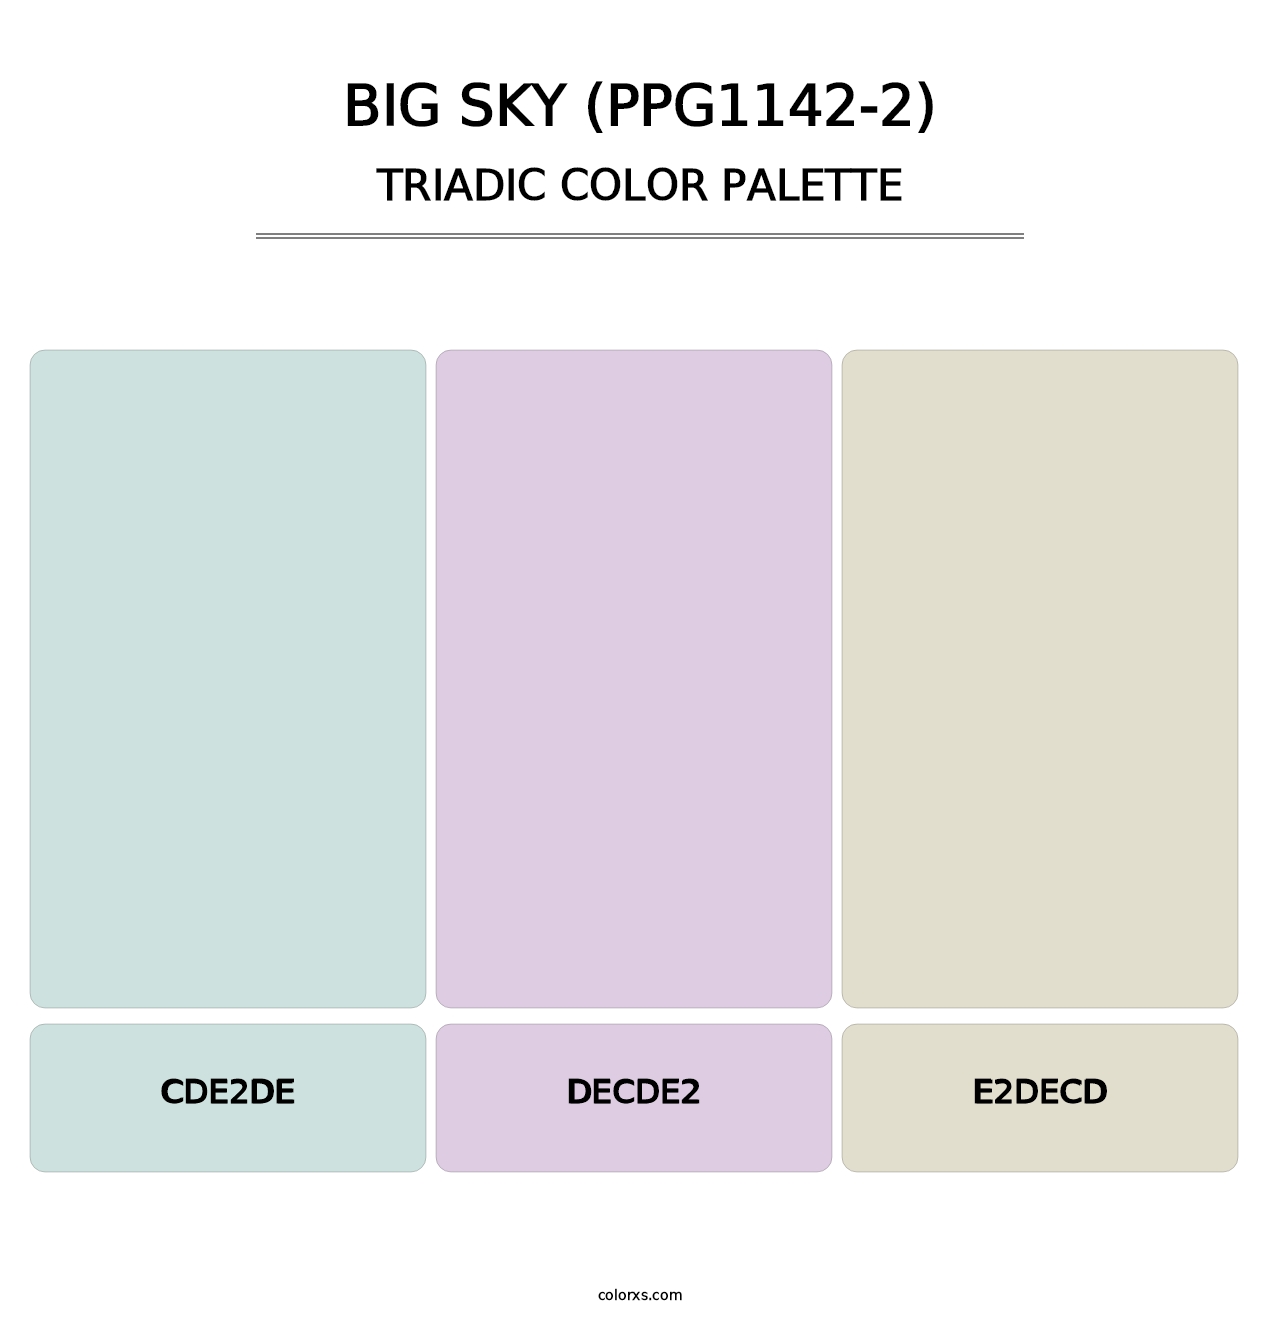 Big Sky (PPG1142-2) - Triadic Color Palette